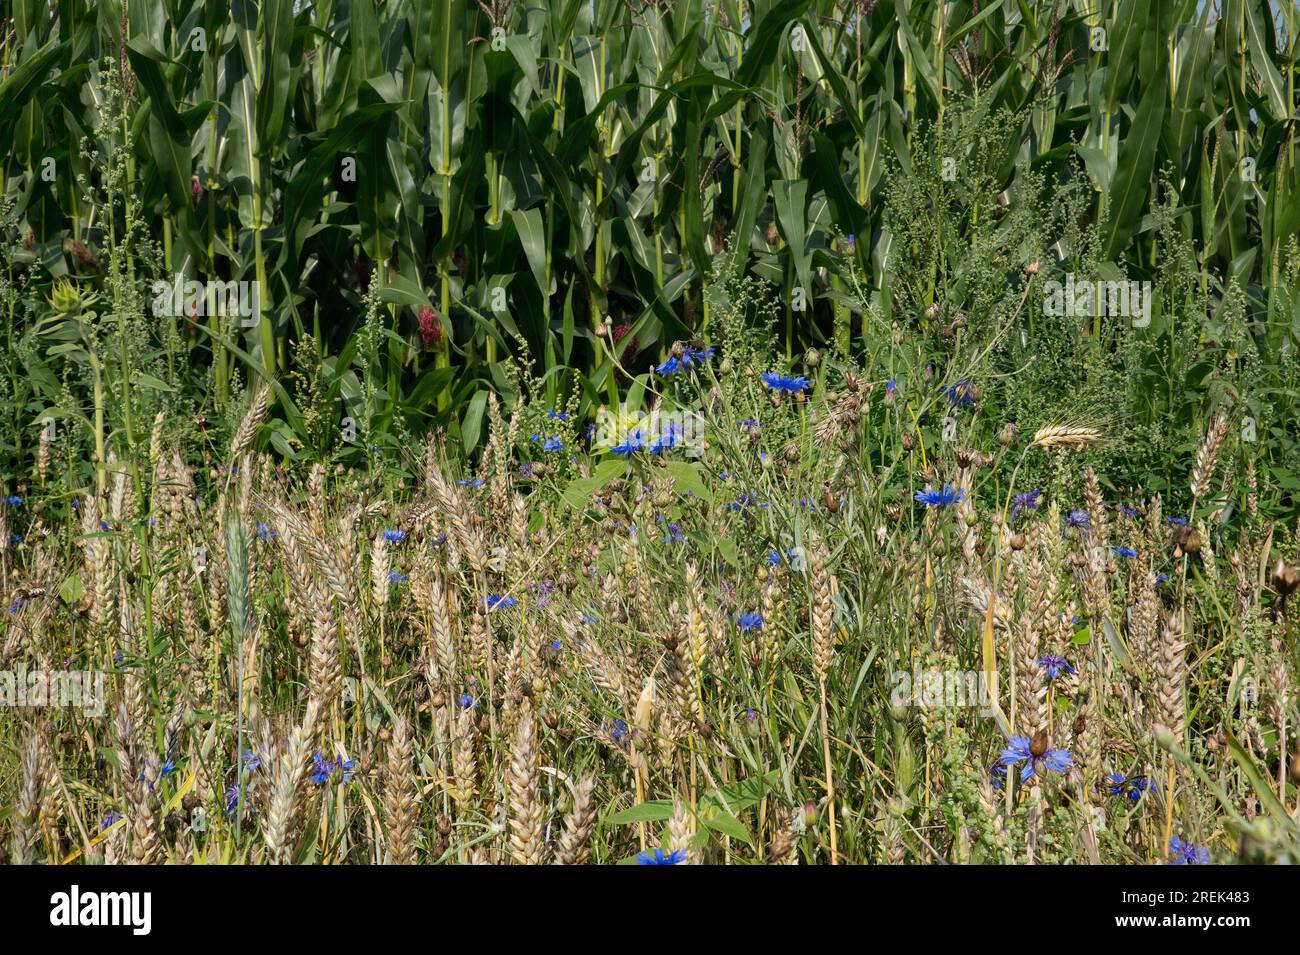 Naturnahe Landwirtschaft, ein blühendes Roggenfeld mit allen Arten von Kräutern, einschließlich Maisblumen, neben einem konventionellen, intensiven Maisfeld Stockfoto